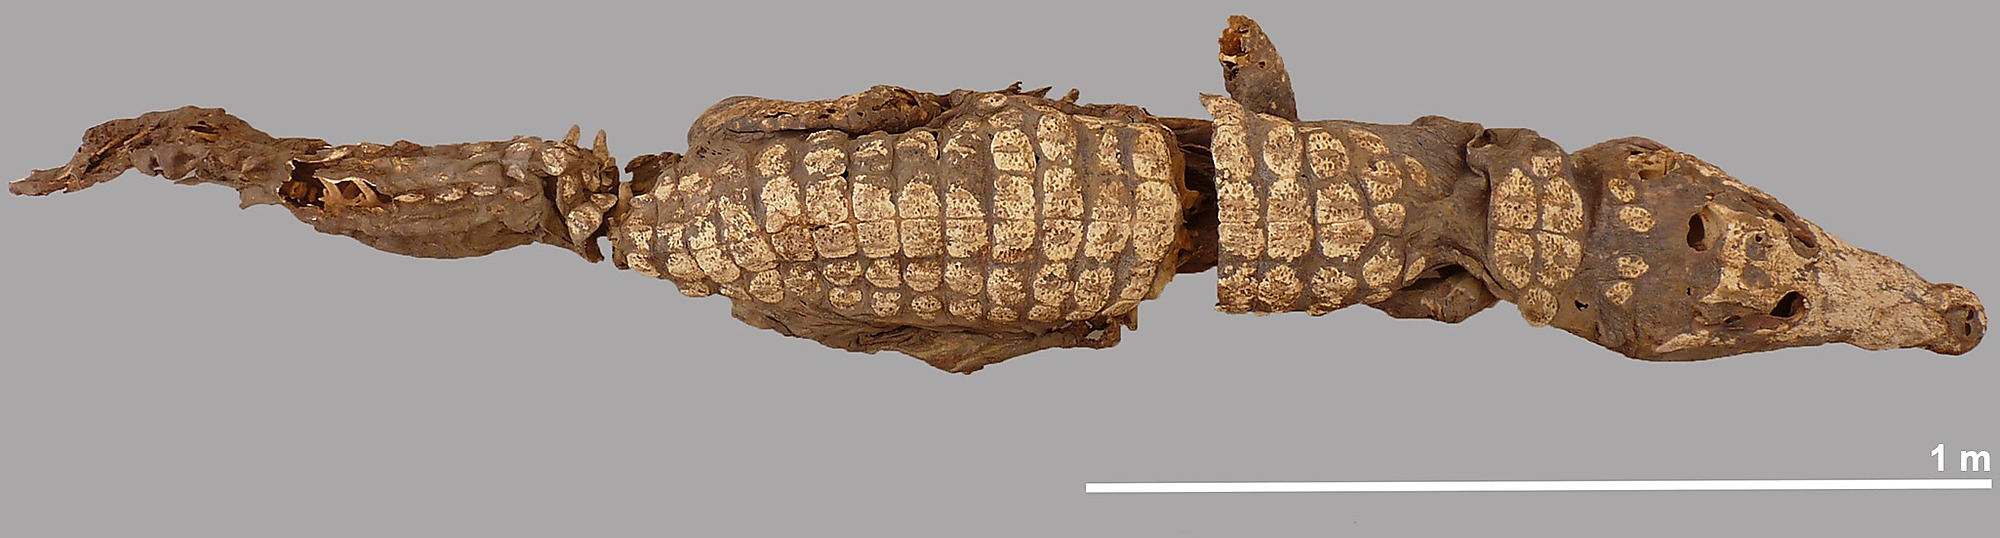 Golygfa dorsal o'r crocodeil cyflawn #5.Patri Mora Riudavets, aelod o dîm Qubbat al-Hawā